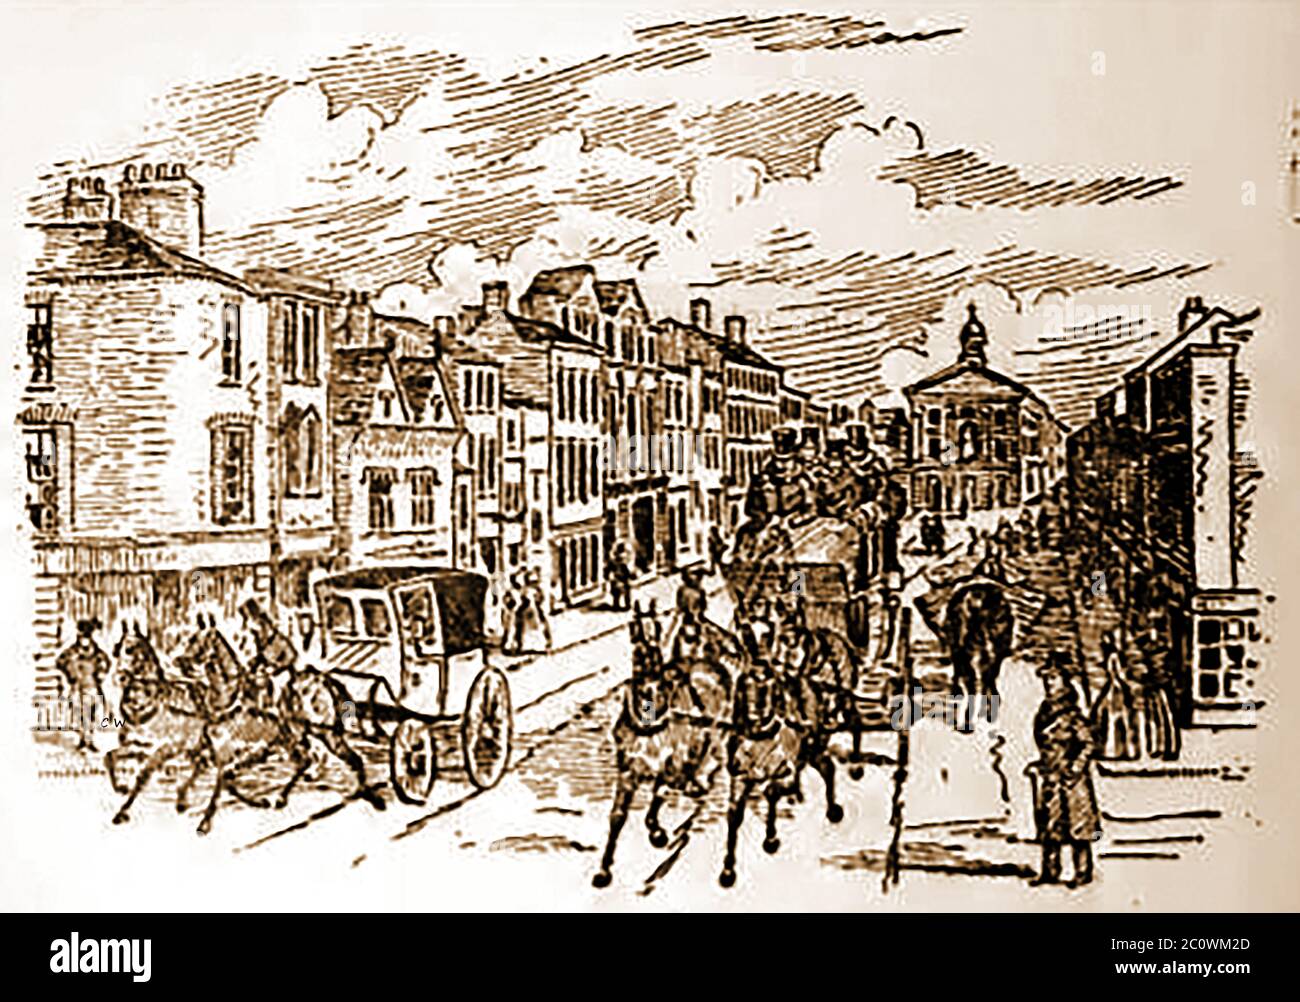 Eine historische Skizze von BRIGGATE Leeds, England, wie es 1888 während der Coaching-Ära war. Zu dieser Zeit waren viele Gasthäuser auf der Straße schon gegangen, einschließlich der Old King's Arms, der Talbot, (später Thornton's Arcade), die Rose und Crown, abgerissen, um Platz für die Queen's Arcade zu machen; Und das alte Weiße Pferd, das vor der Erweiterung der Böerspur an der westlichen Ecke der Weißen Rössl Straße gegenüberstand. Zu dieser Zeit blieben der Goldene Löwe, das Albion, der Stier und Mund und der Stern und der Garter an der Ecke Stockfoto